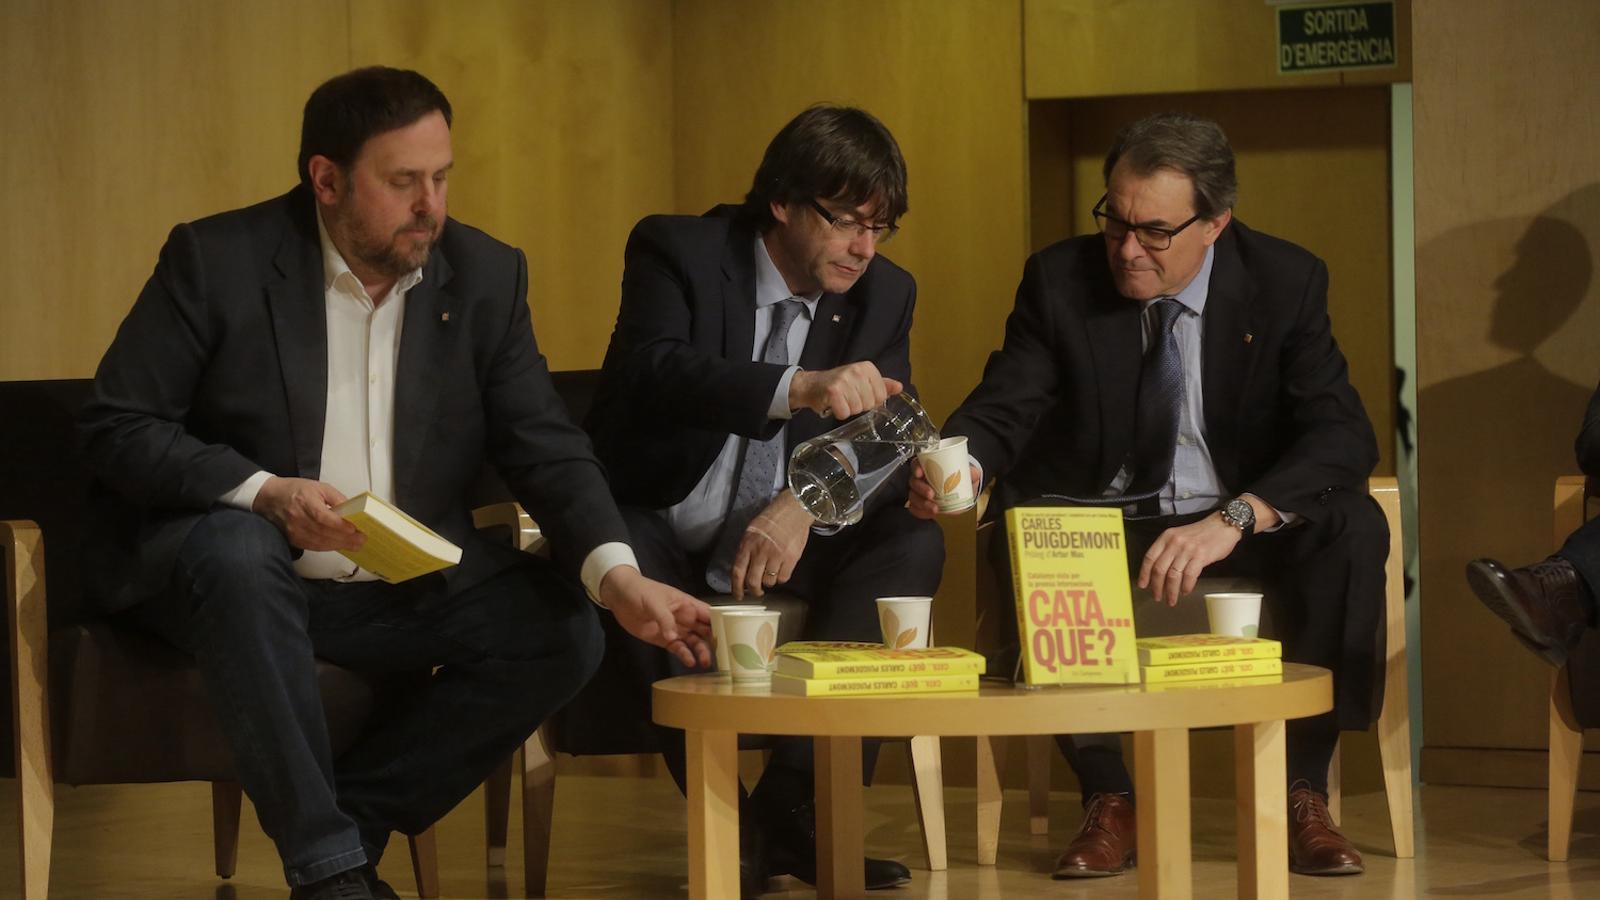 Oriol Junqueras, Carles Puigdemont i Artur Mas, en la presentació del llibre 'Cataquè?', de Carles Puigdemont i Carles Ribera